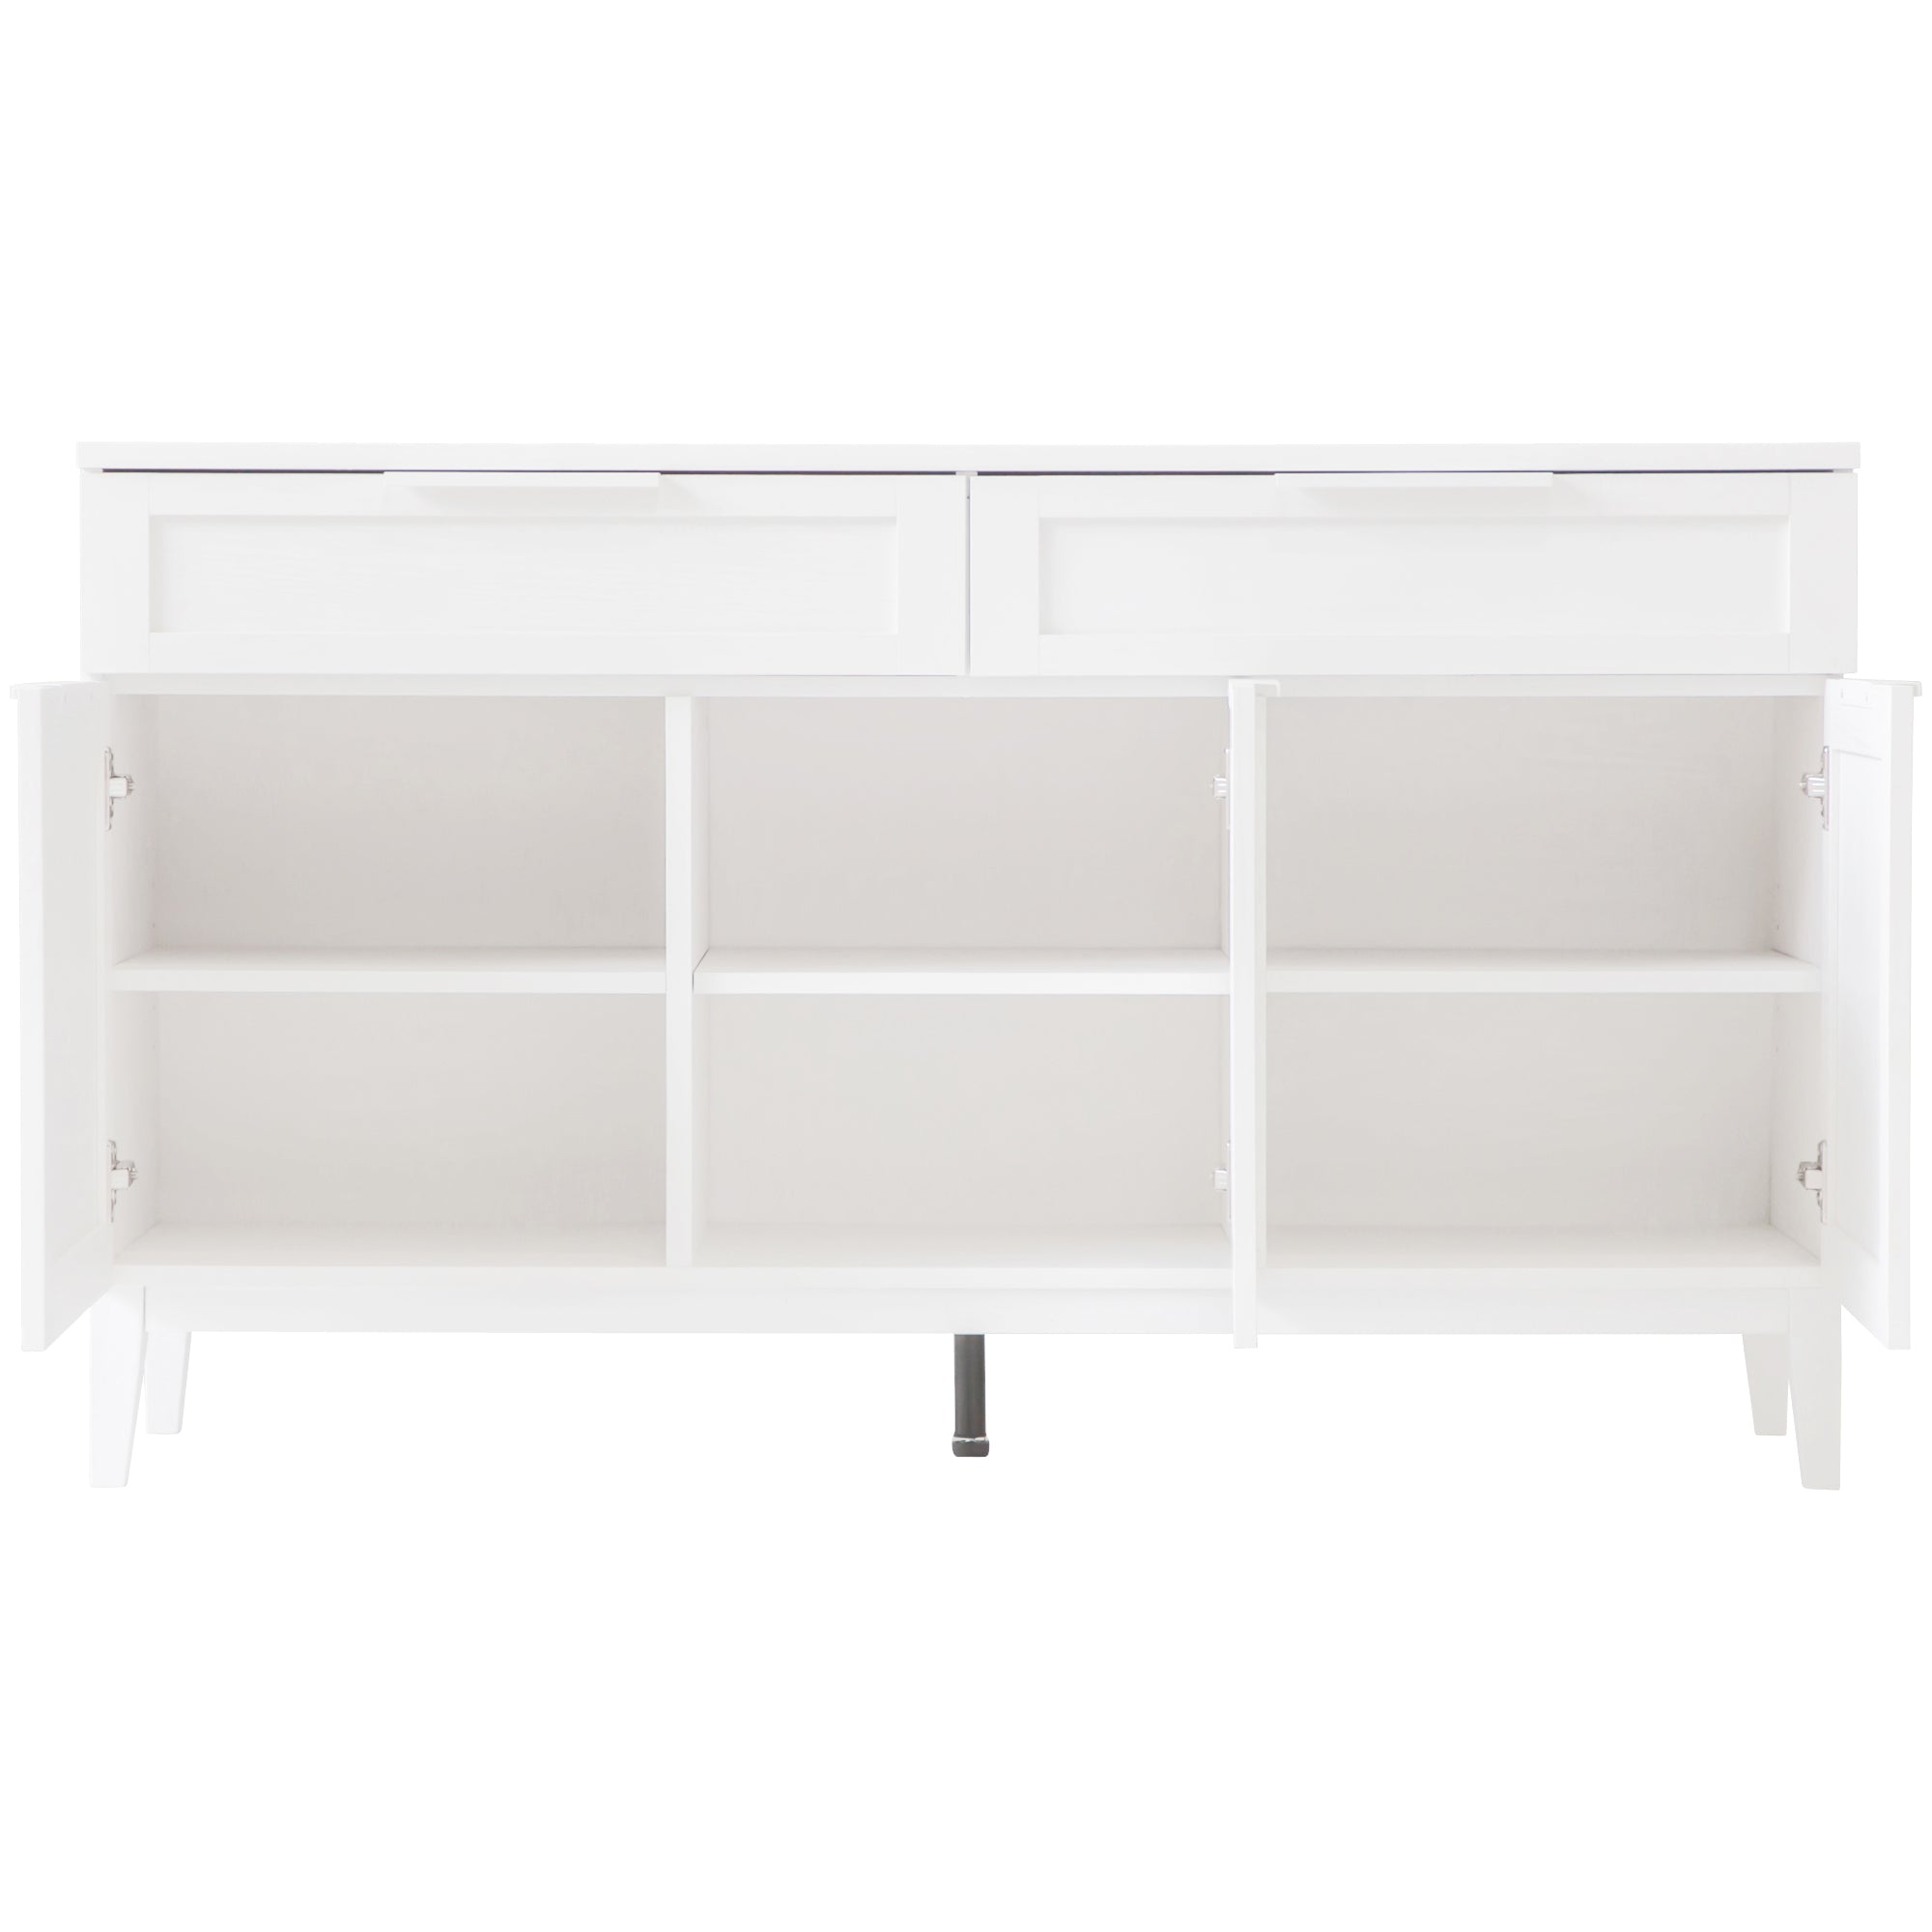 Tenley 2 Drawer 3 Door Sideboard Cabinet - White